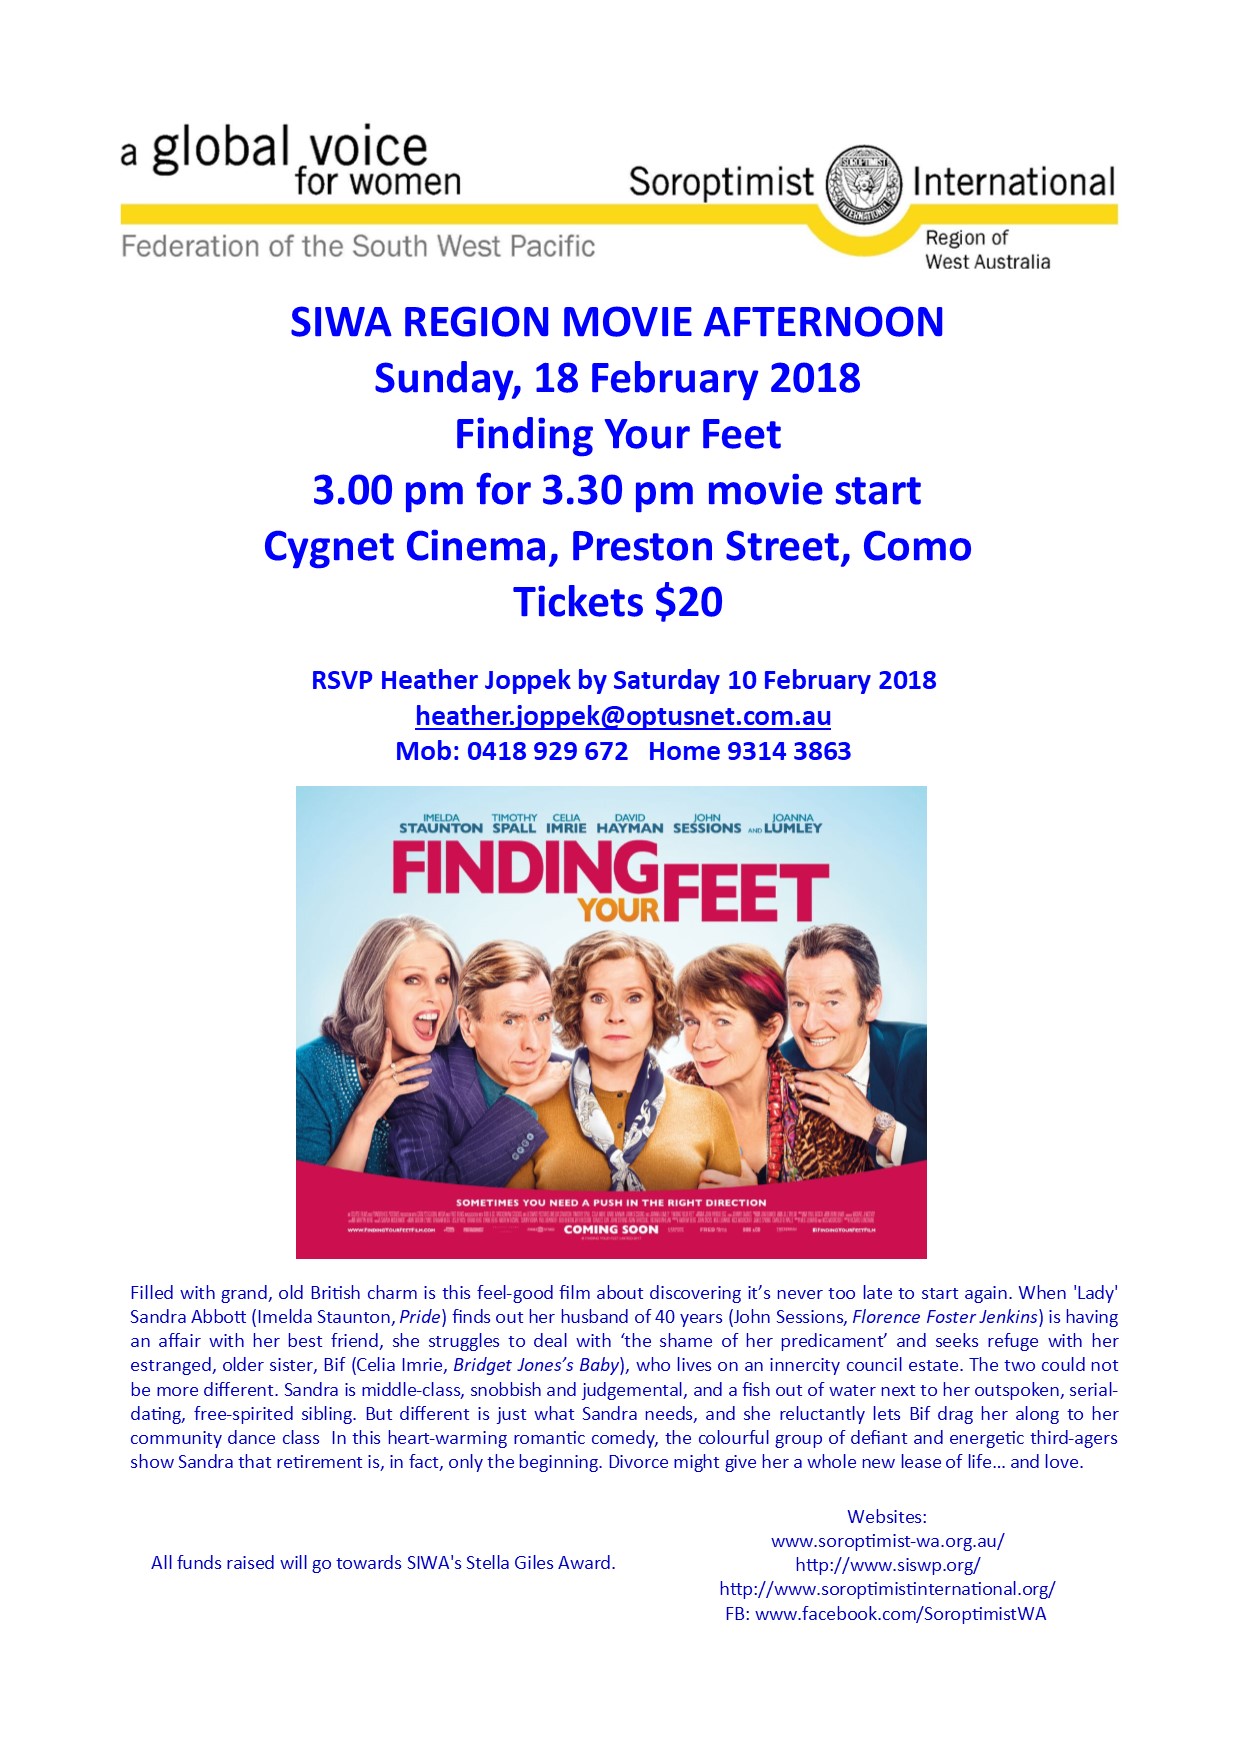 SIWA Region Movie Afternoon 2018